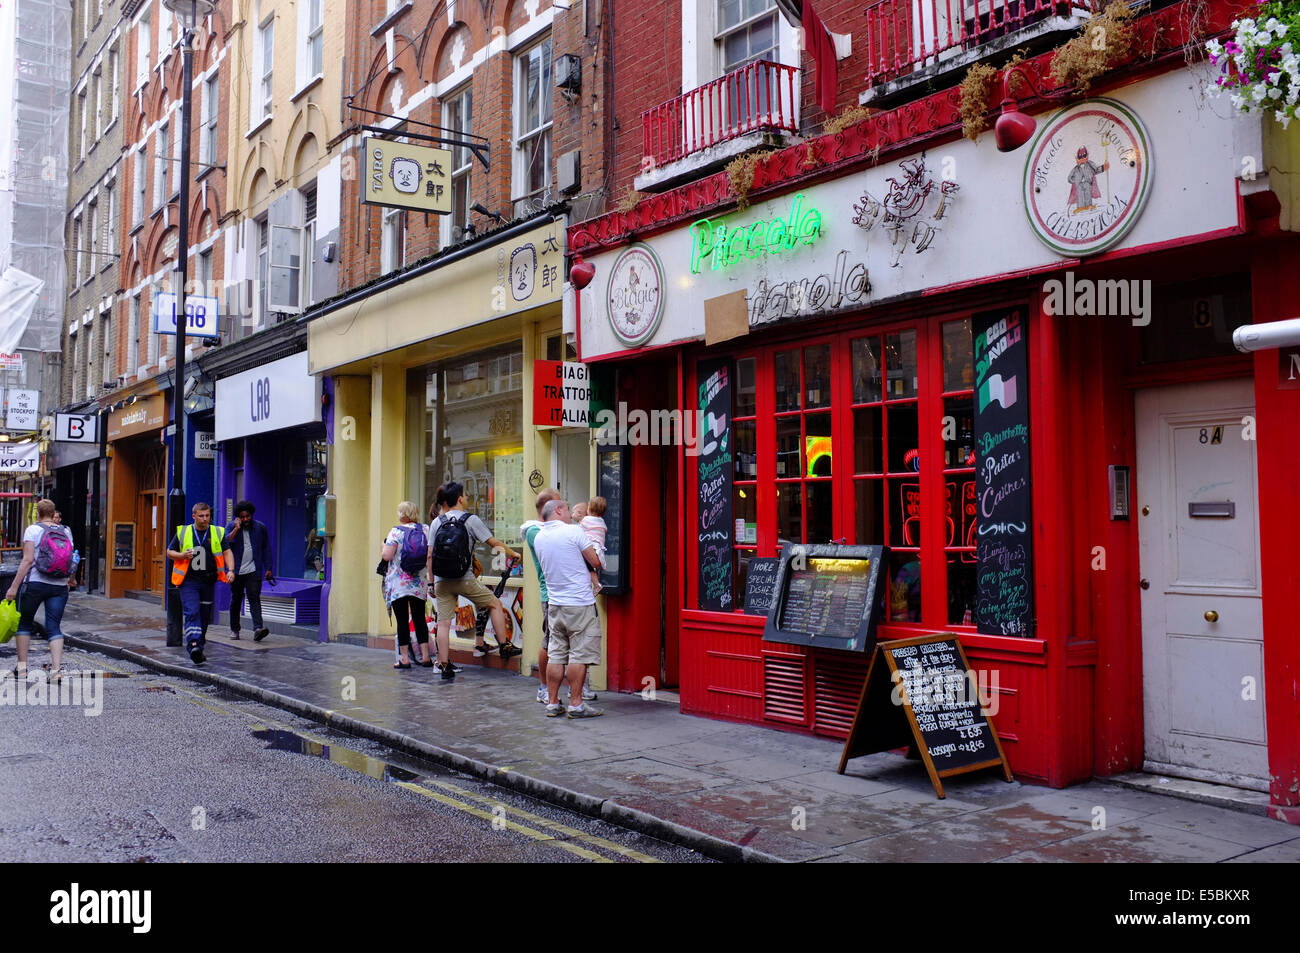 people looking at menus of restaurants in Soho, London Stock Photo